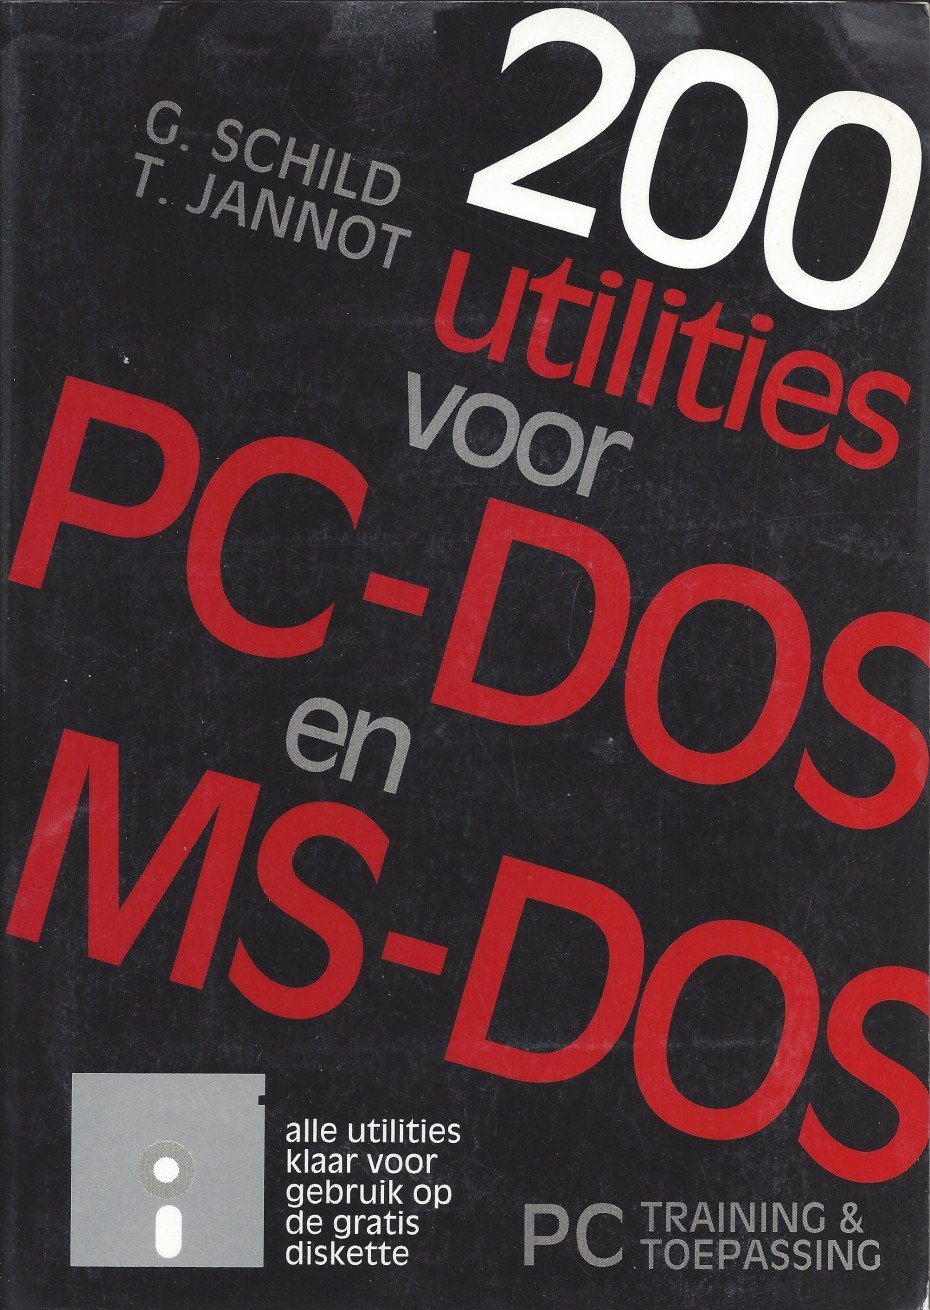 200 utilities voor PC-DOS en MS-DOS